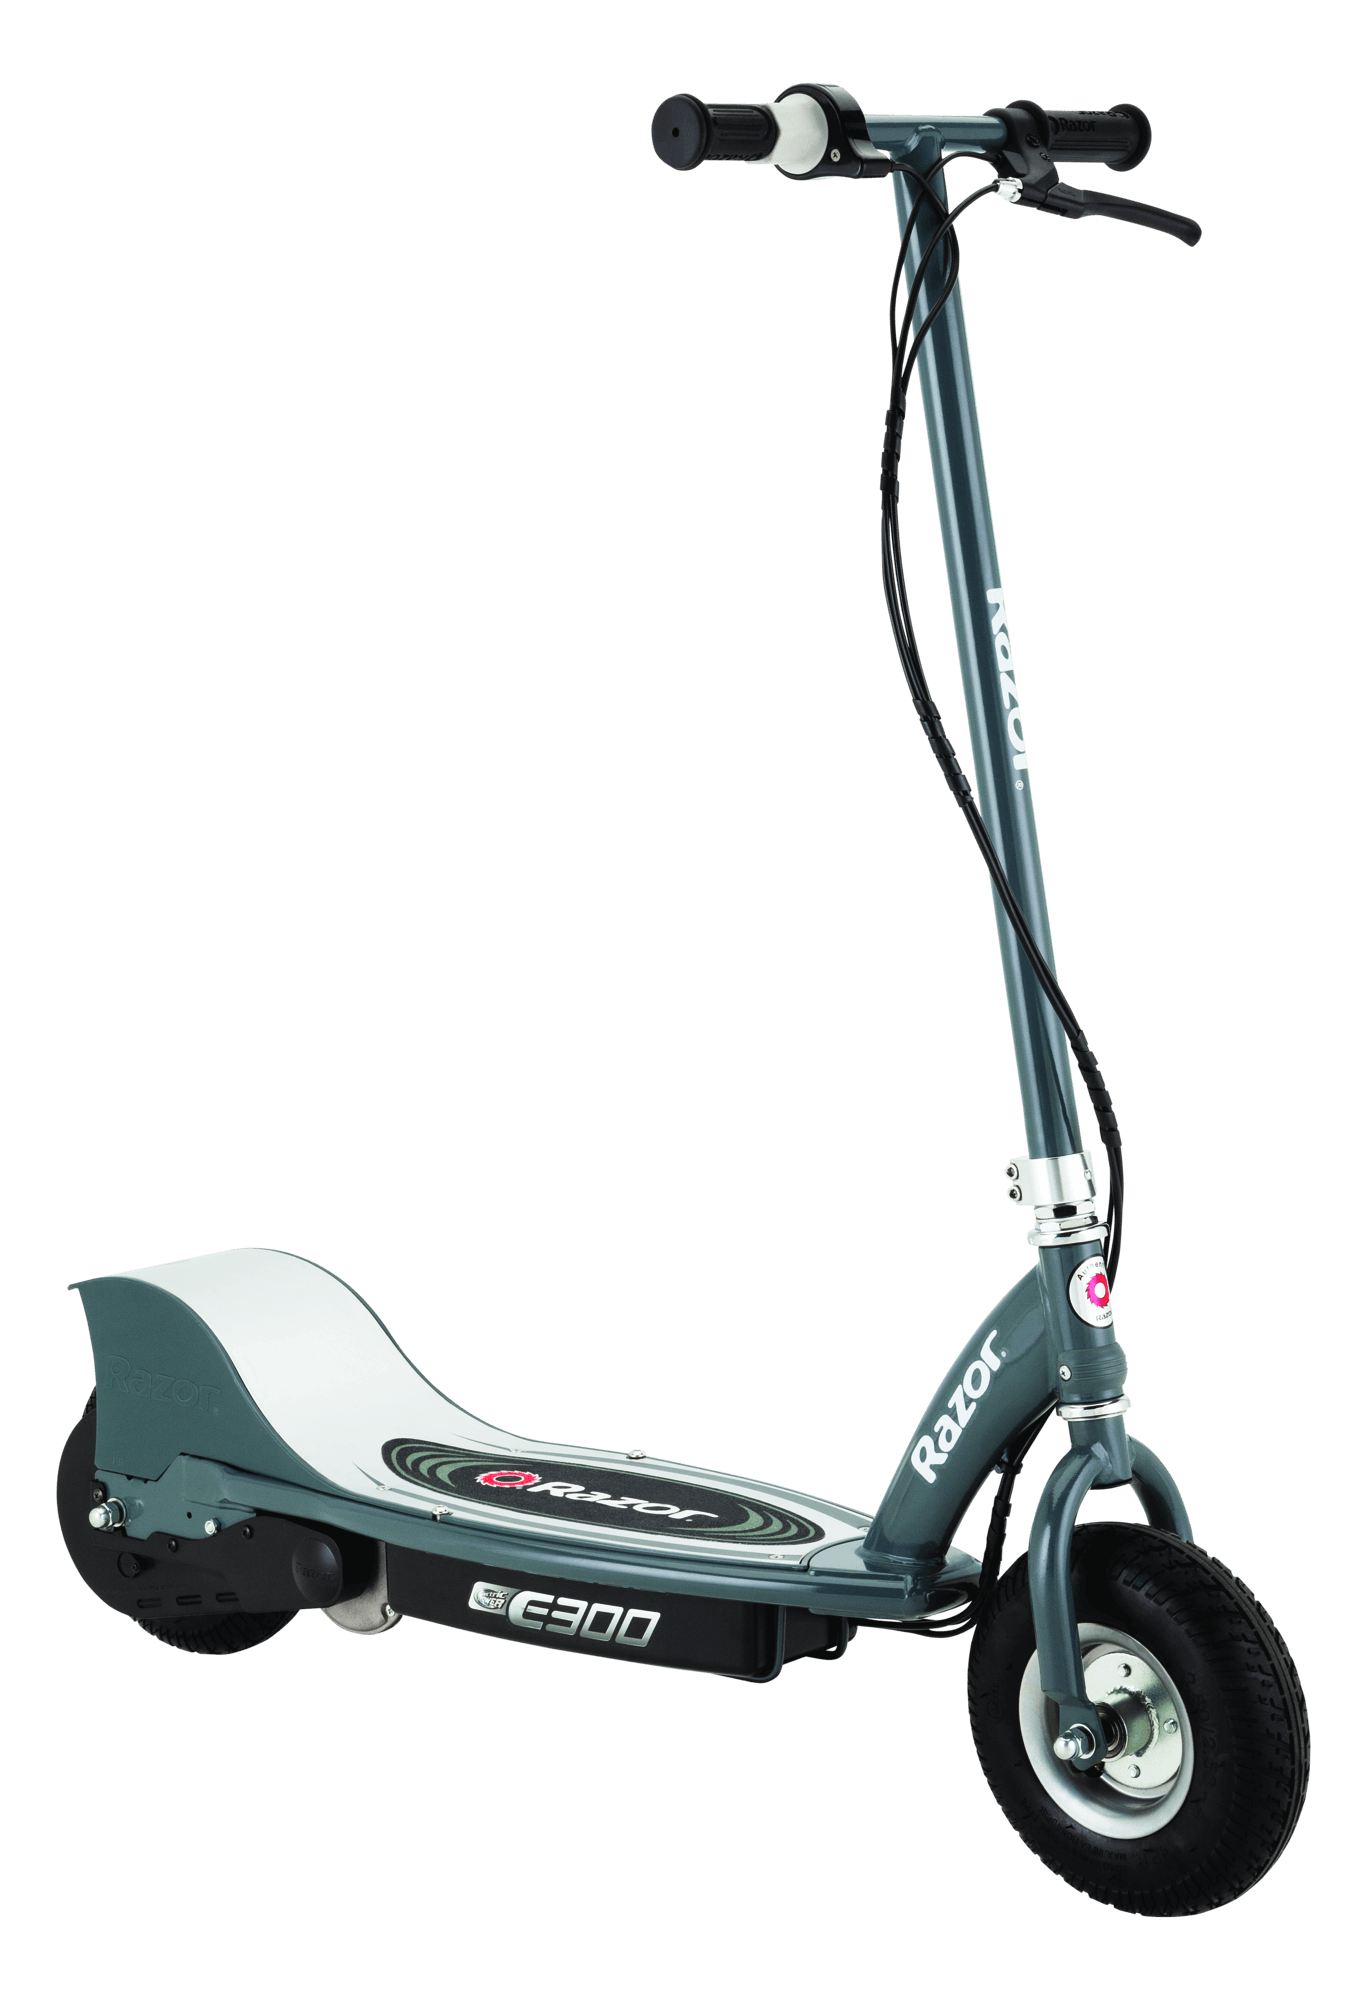 E300 Electric Scooter - Razor